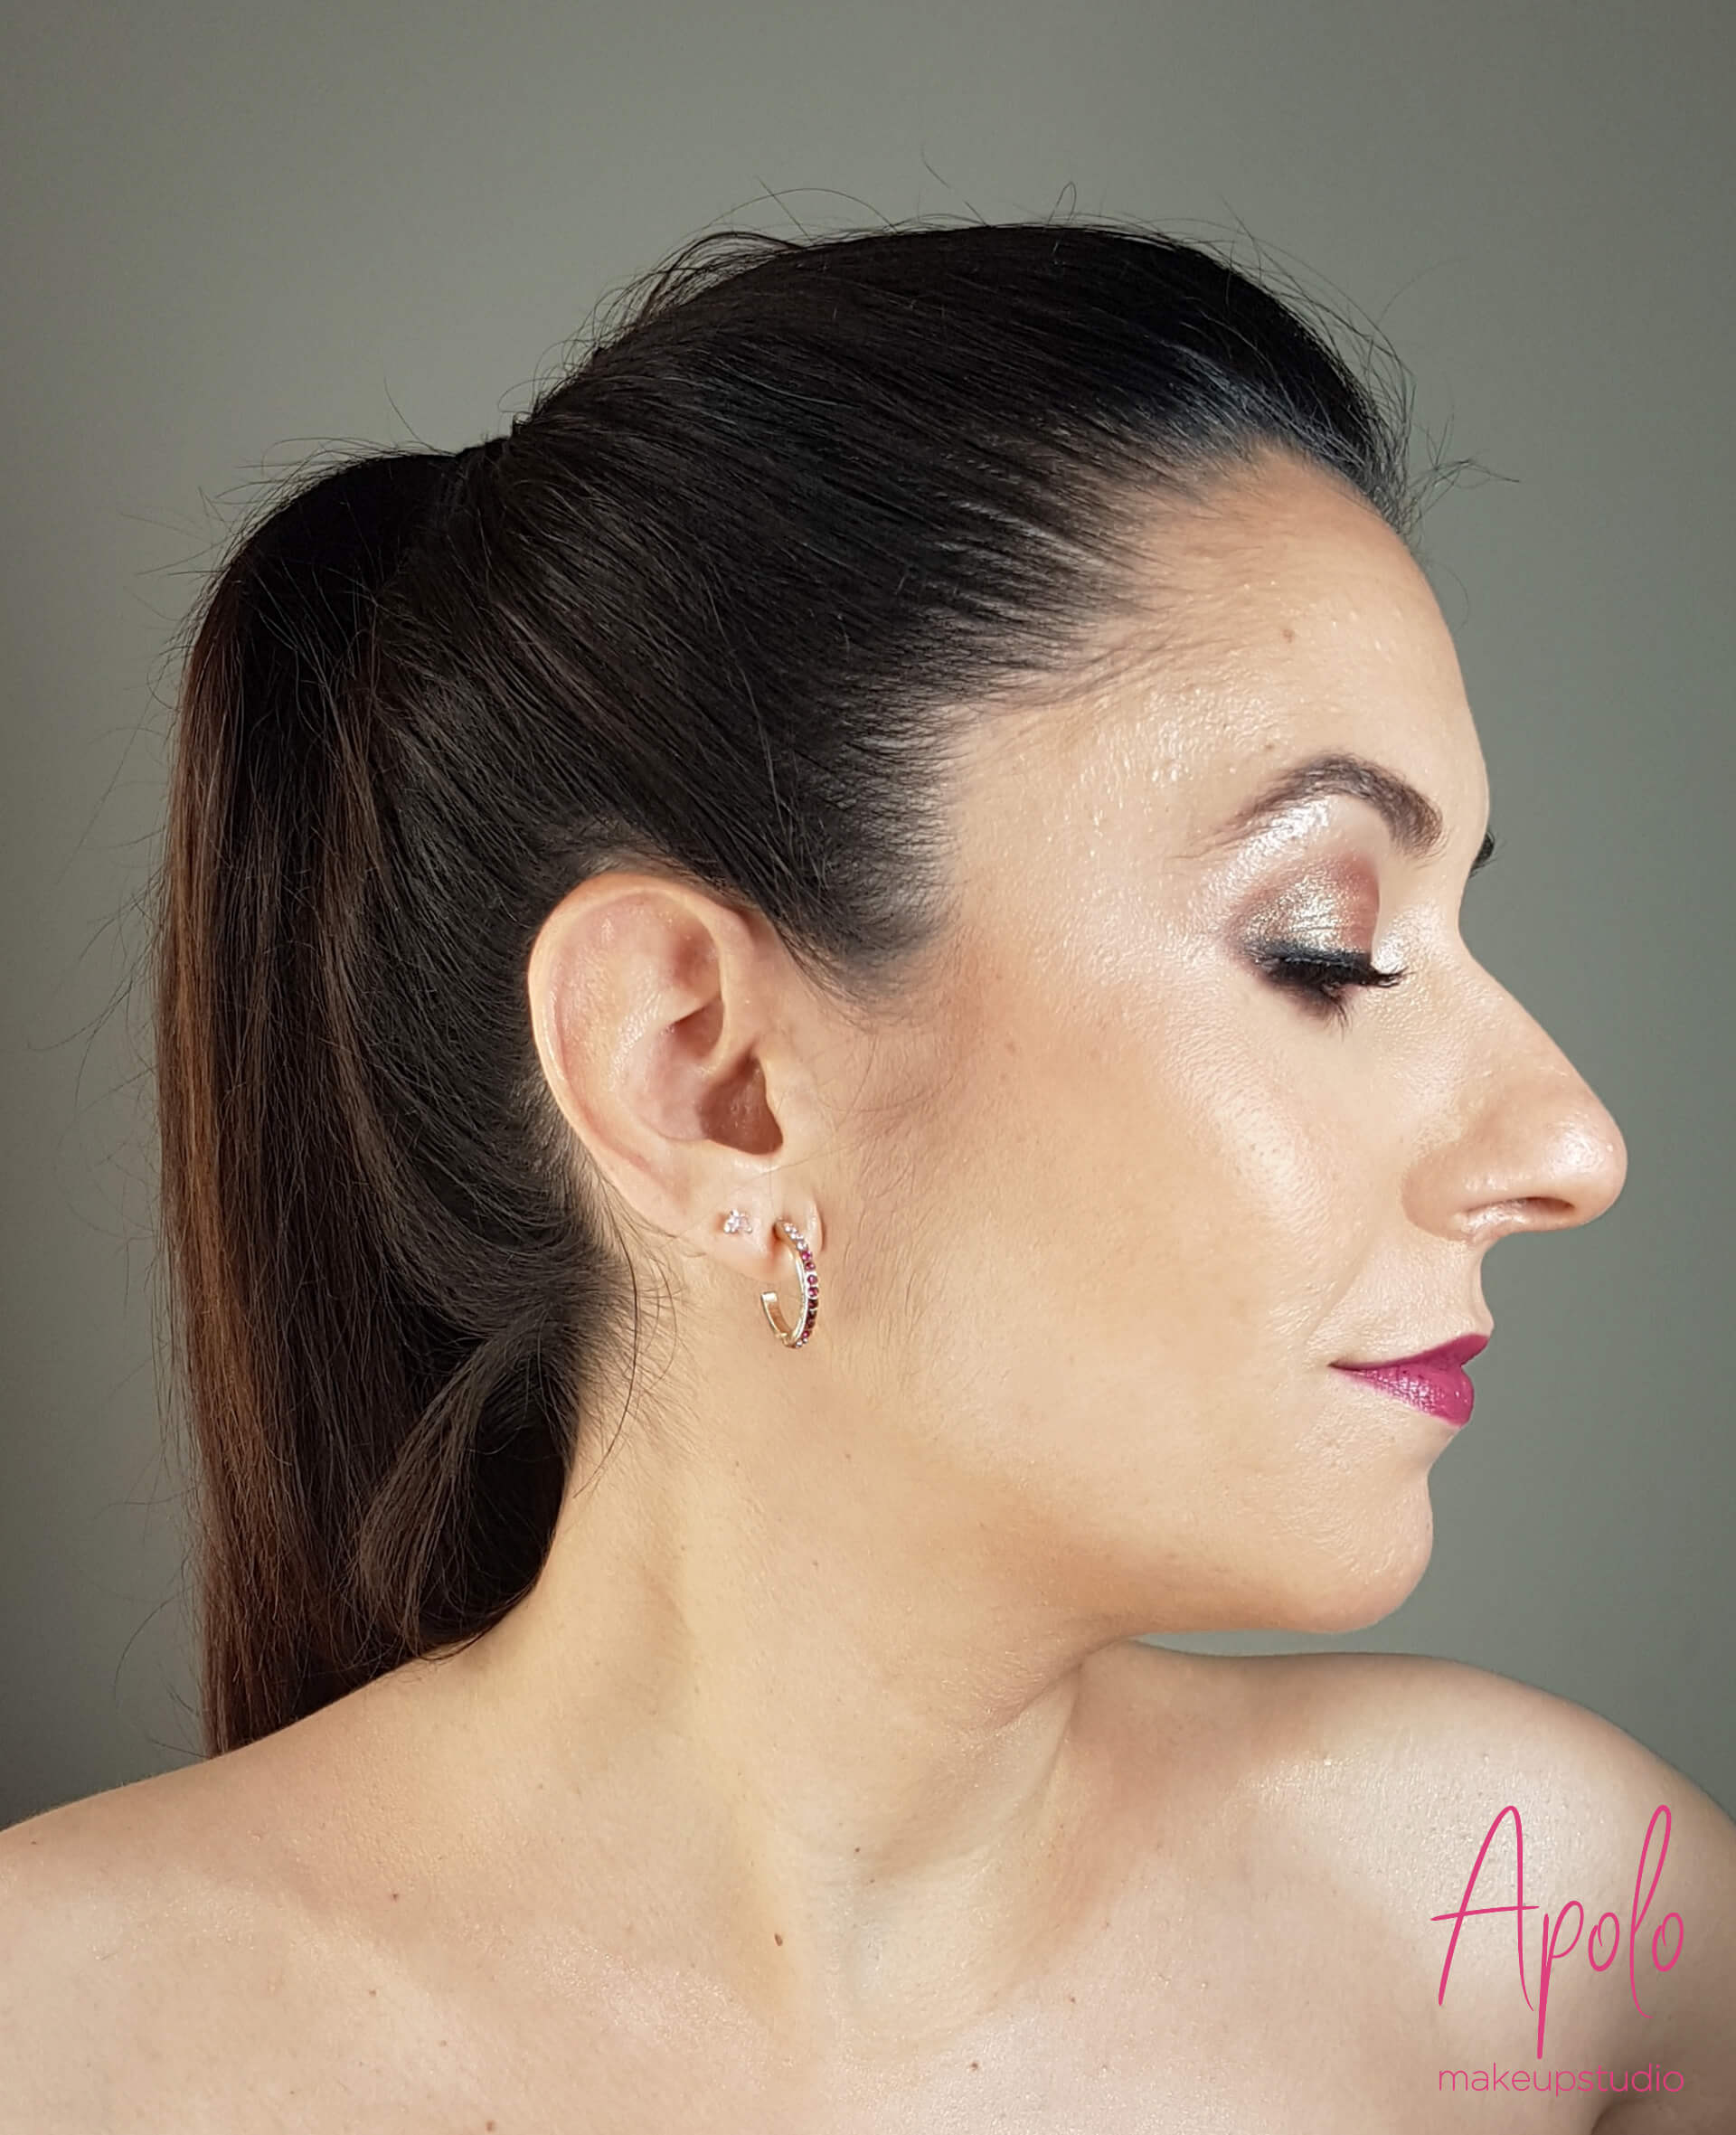 Maquillaje profesional de novia - Apolo Makeup